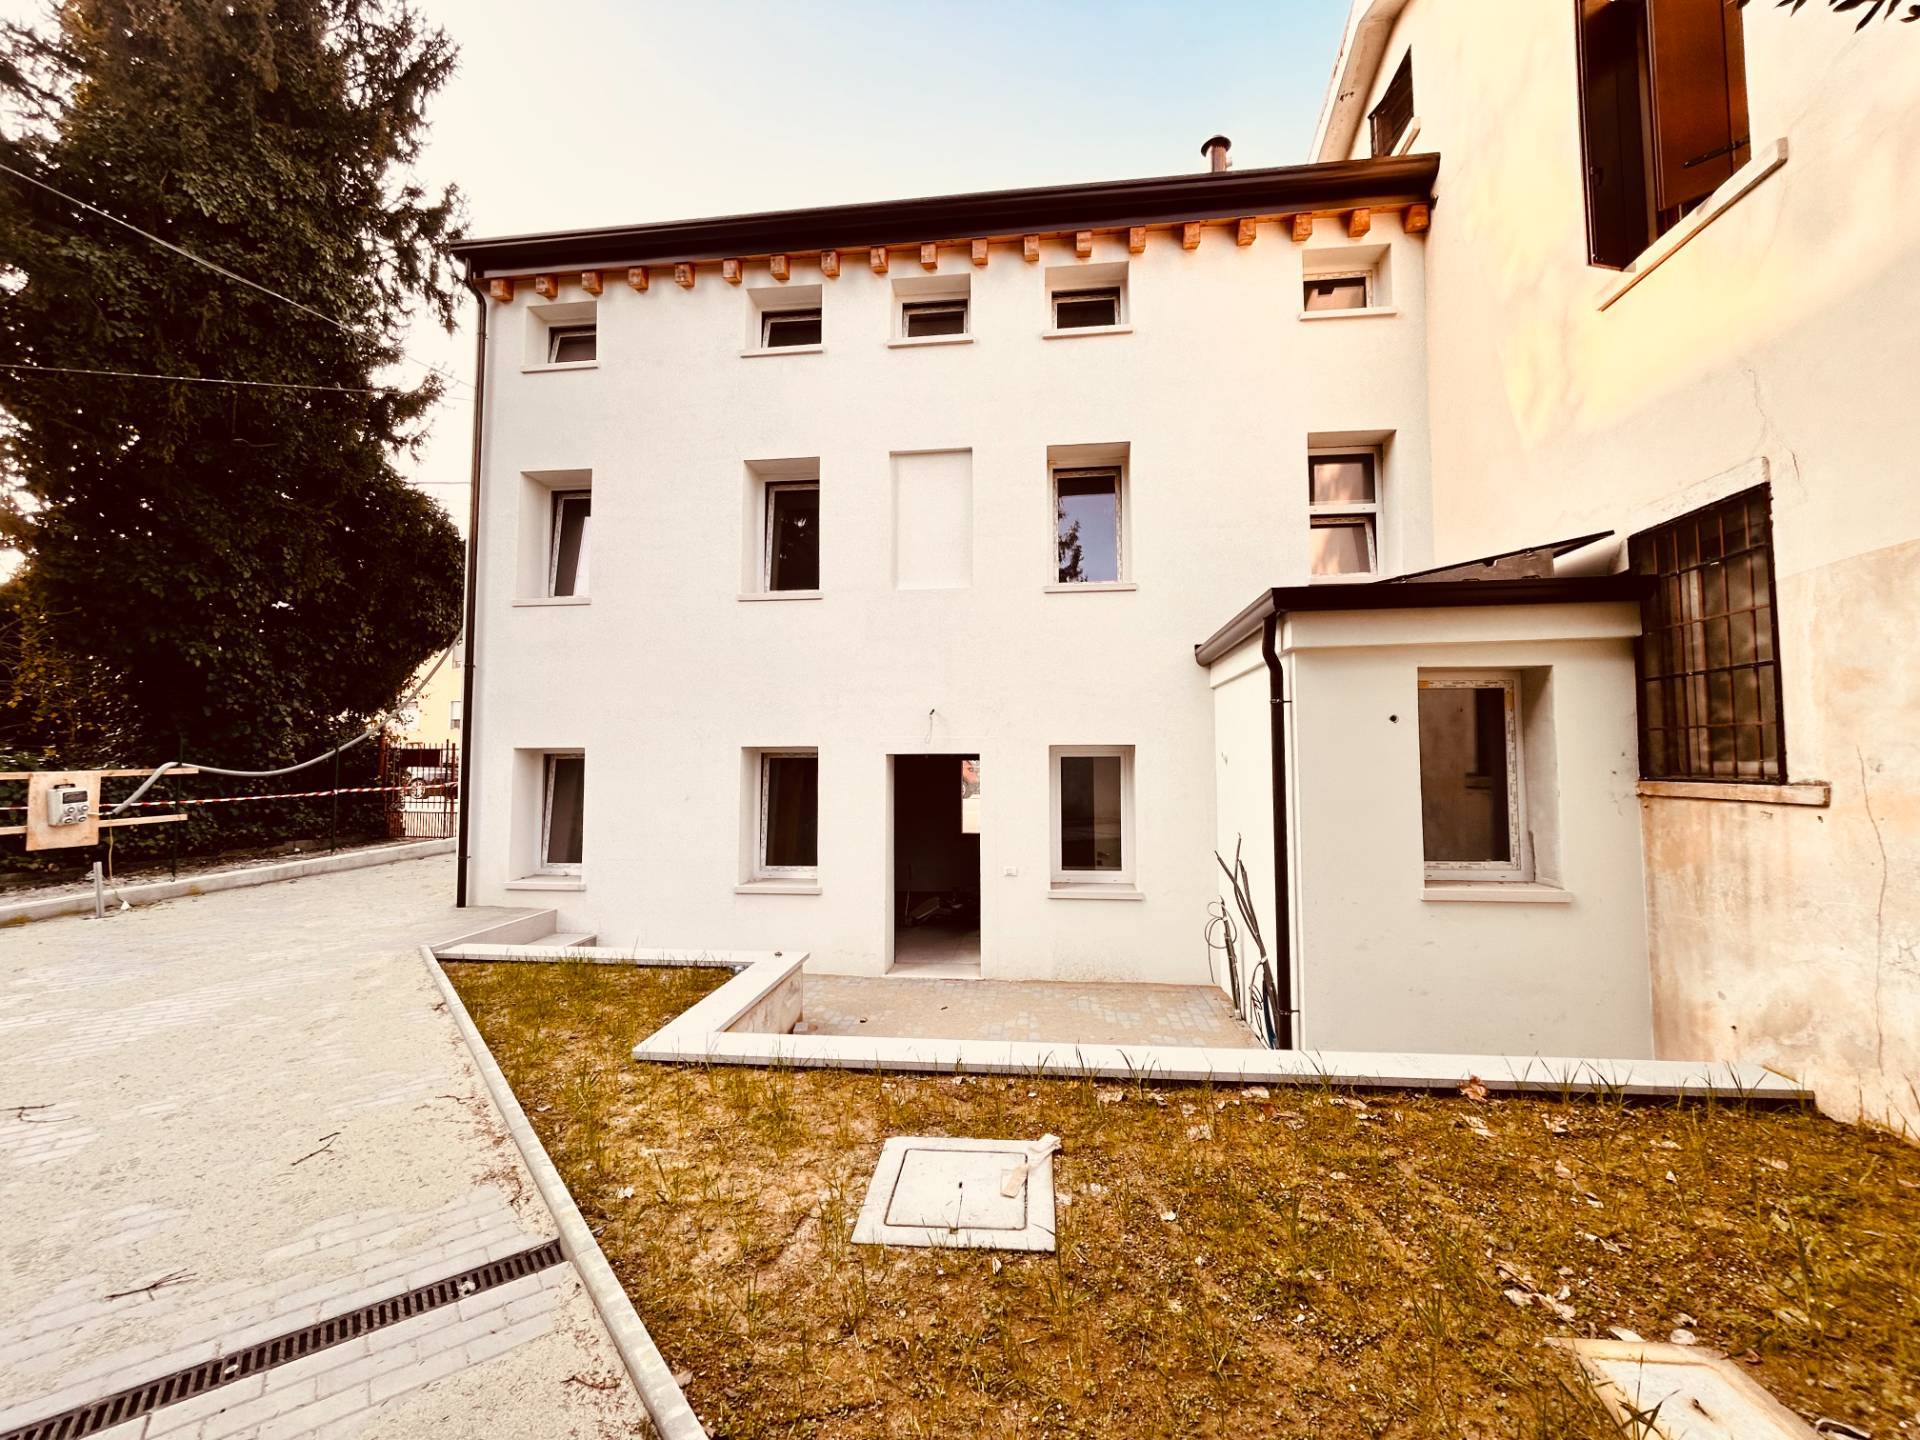 Casa indipendente con box doppio, Vicenza borgo casale-v.le trieste